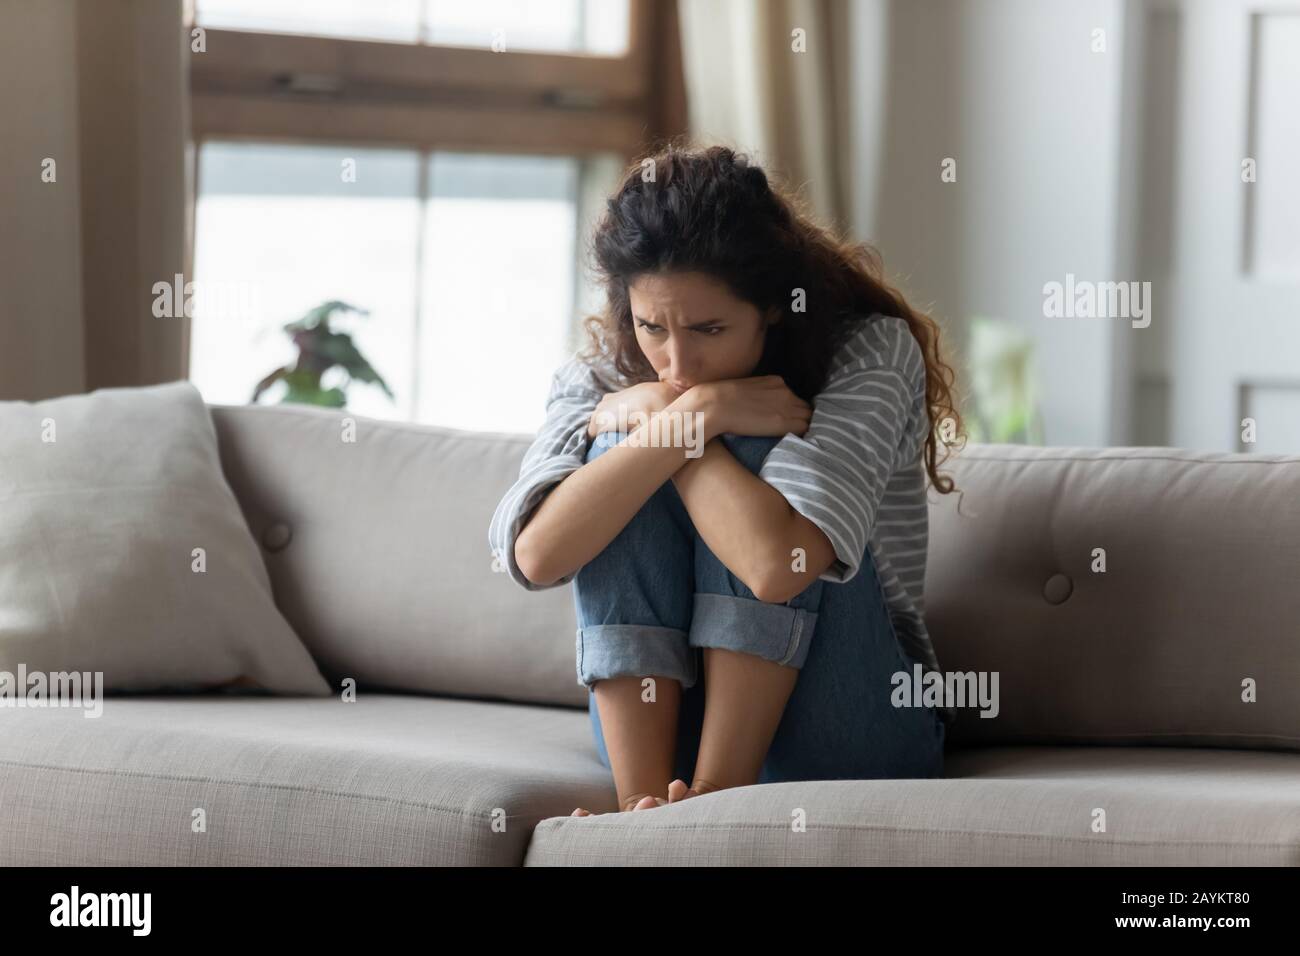 Jeune femme stressée embrassant les genoux, assise seule sur le canapé. Banque D'Images